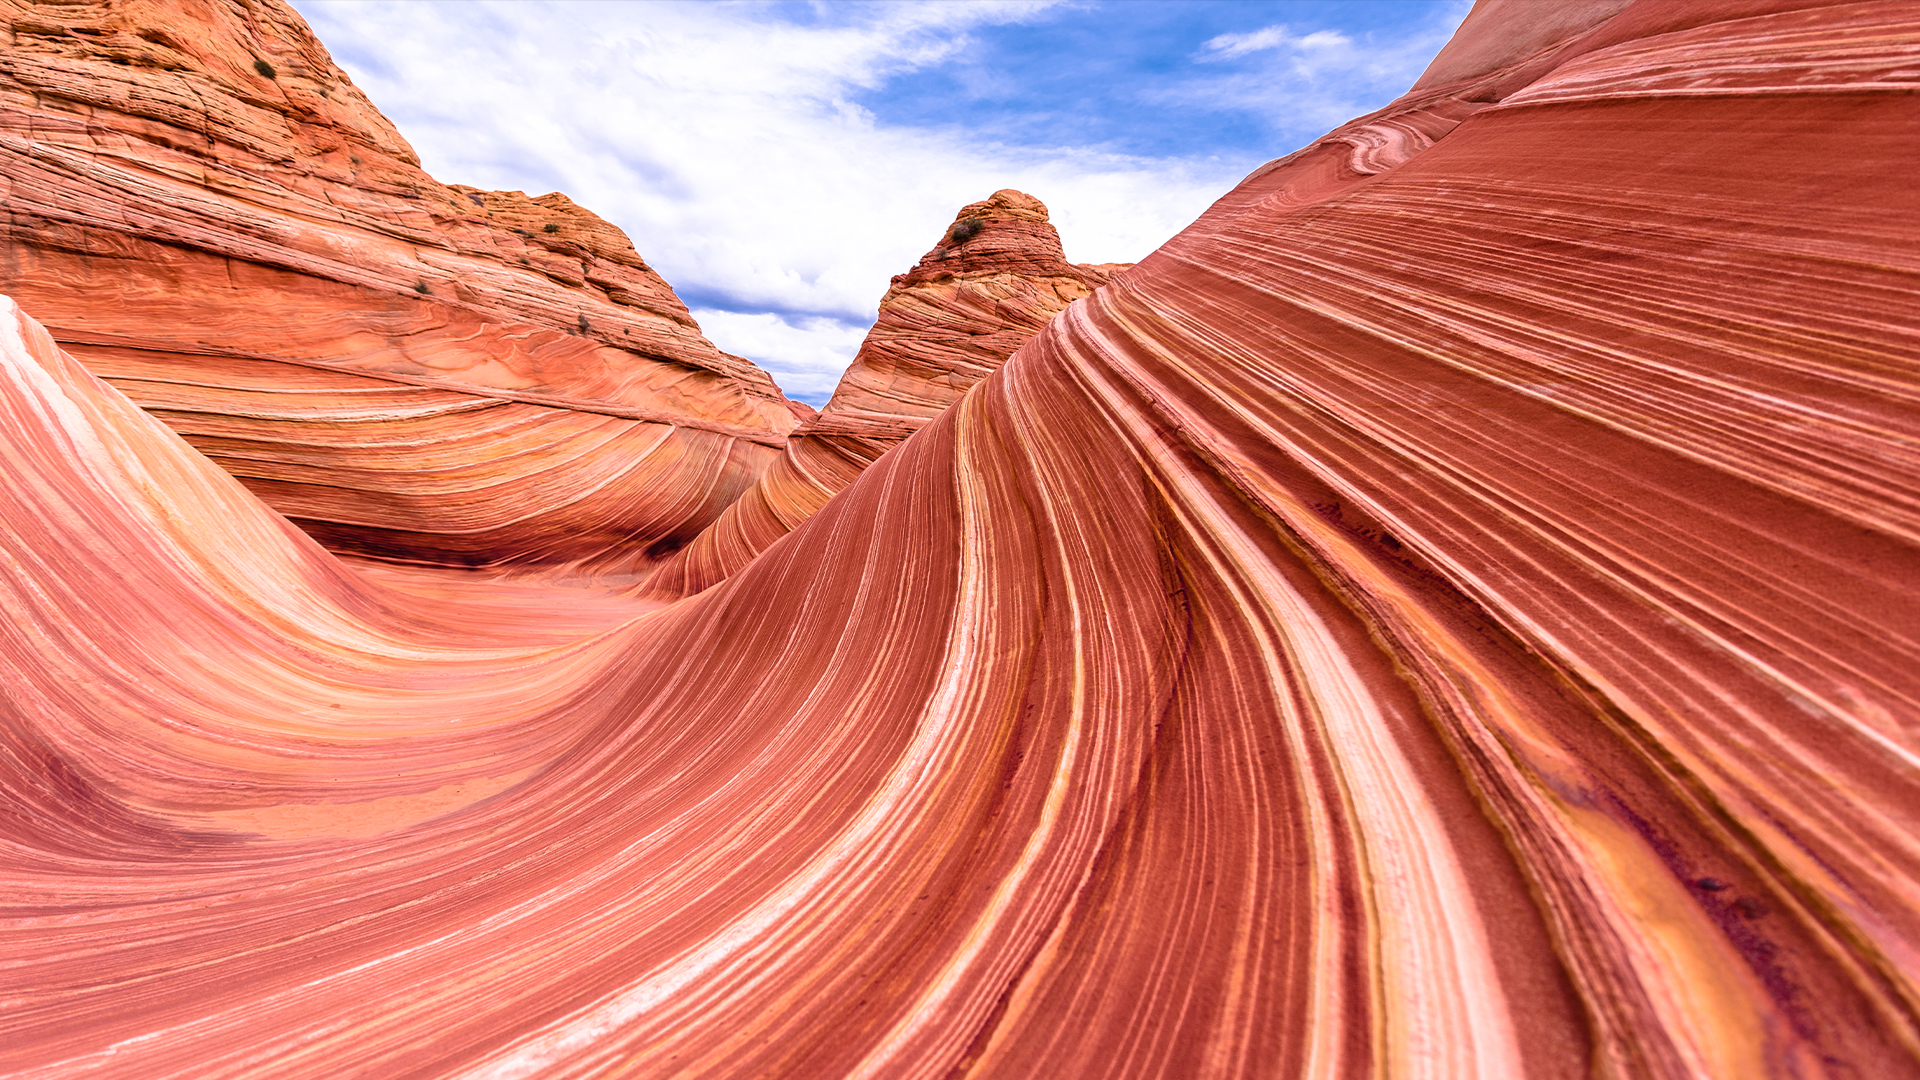 Вълната е скално образувание от пясъчник, разположено в Съединените американски щати близо до границата между Аризона и Юта, по склоновете на Coyote Buttes, в пустинята Париа Каньон-Вермилион Клифс, на платото Колорадо.